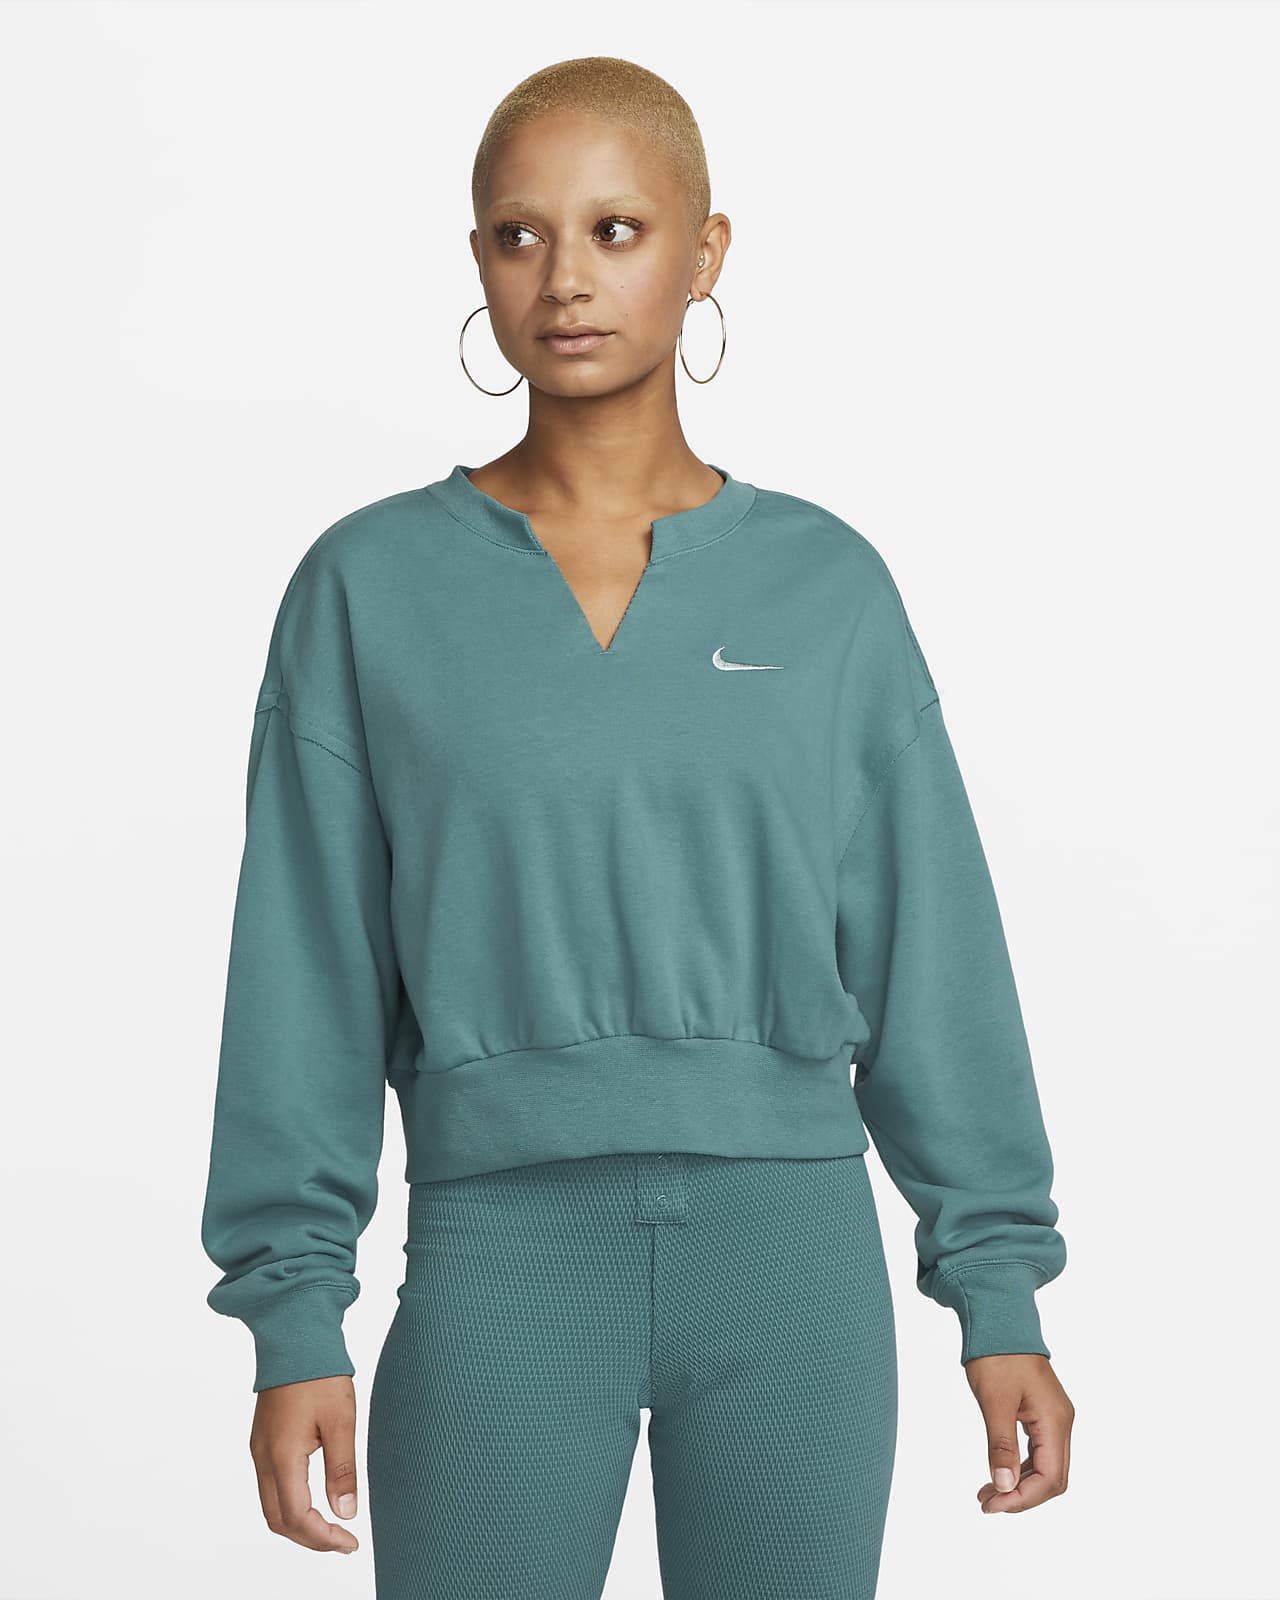 NIKE Sportswear Womens Oversized Crop Crewneck Sweatshirt